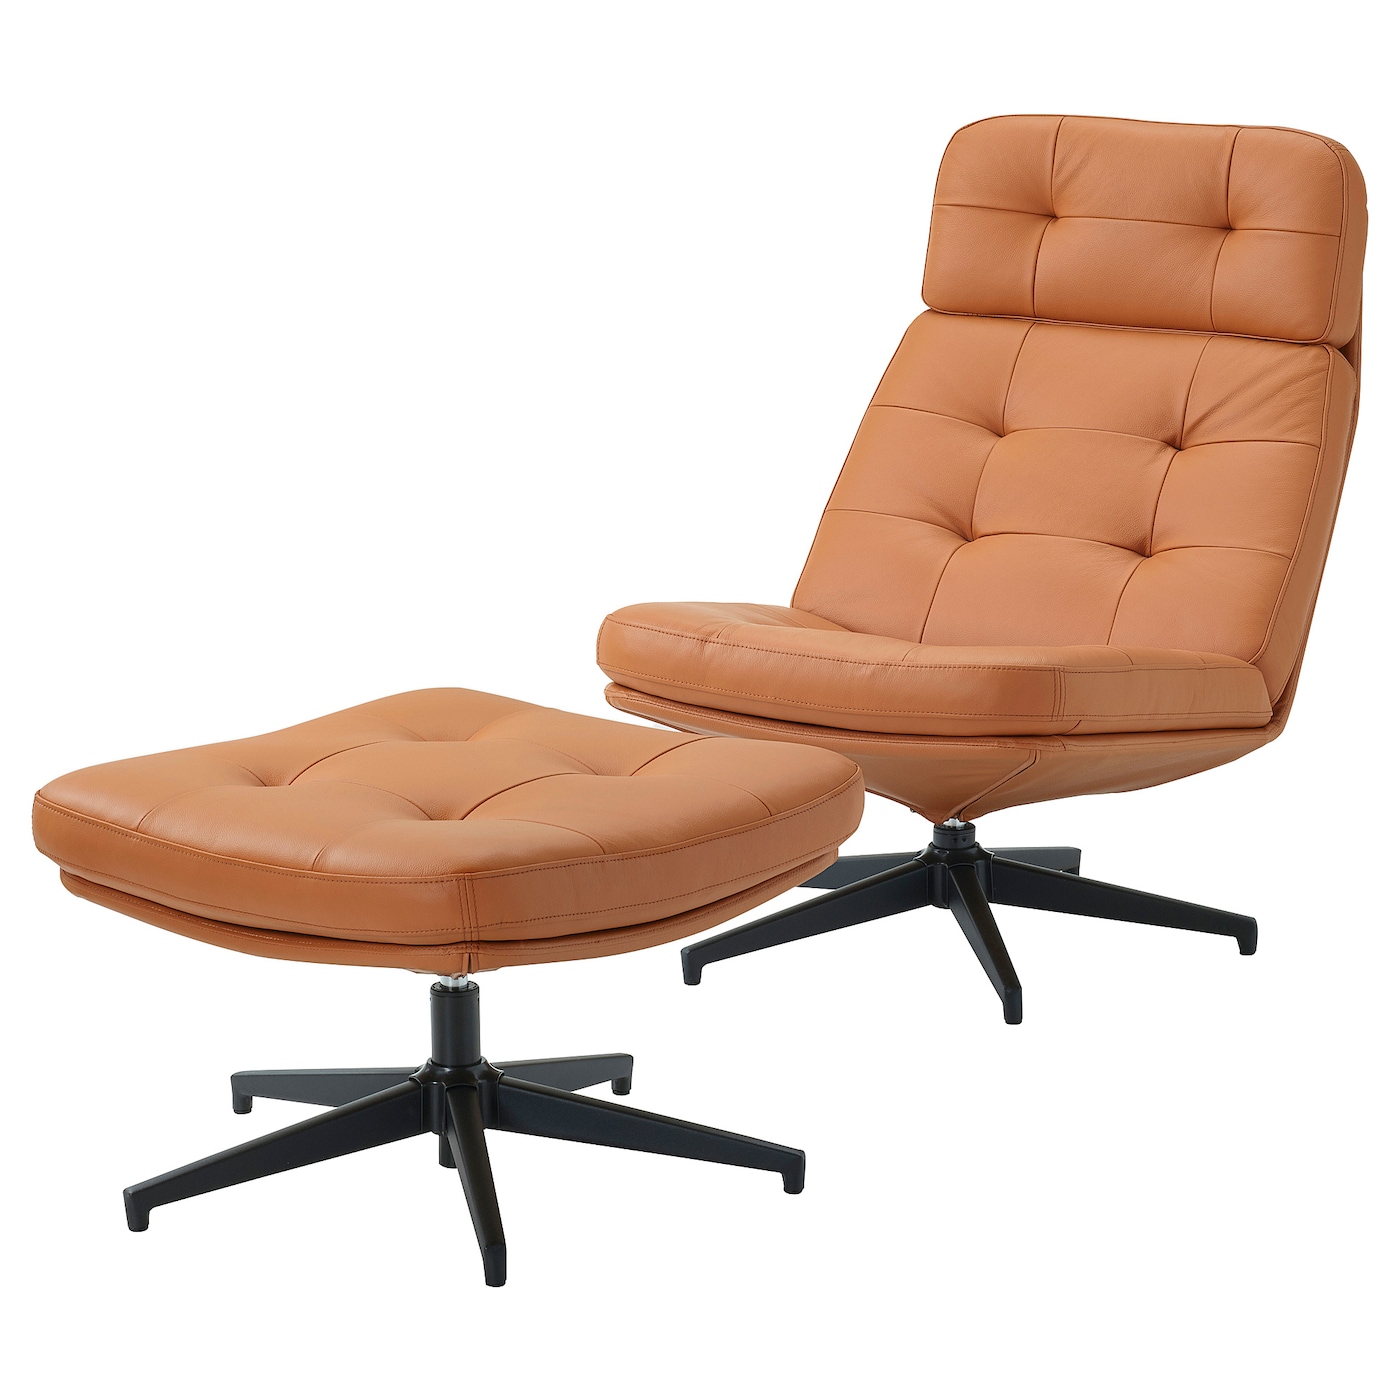 ХАВБЕРГ Кресло и подставка для ног, Гранн/Бомстад золотисто-коричневый HAVBERG IKEA эргономичное колесико офисное кресло с поддержкой спинки удобное вращающееся игровое кресло подставка для ног офисная мебель